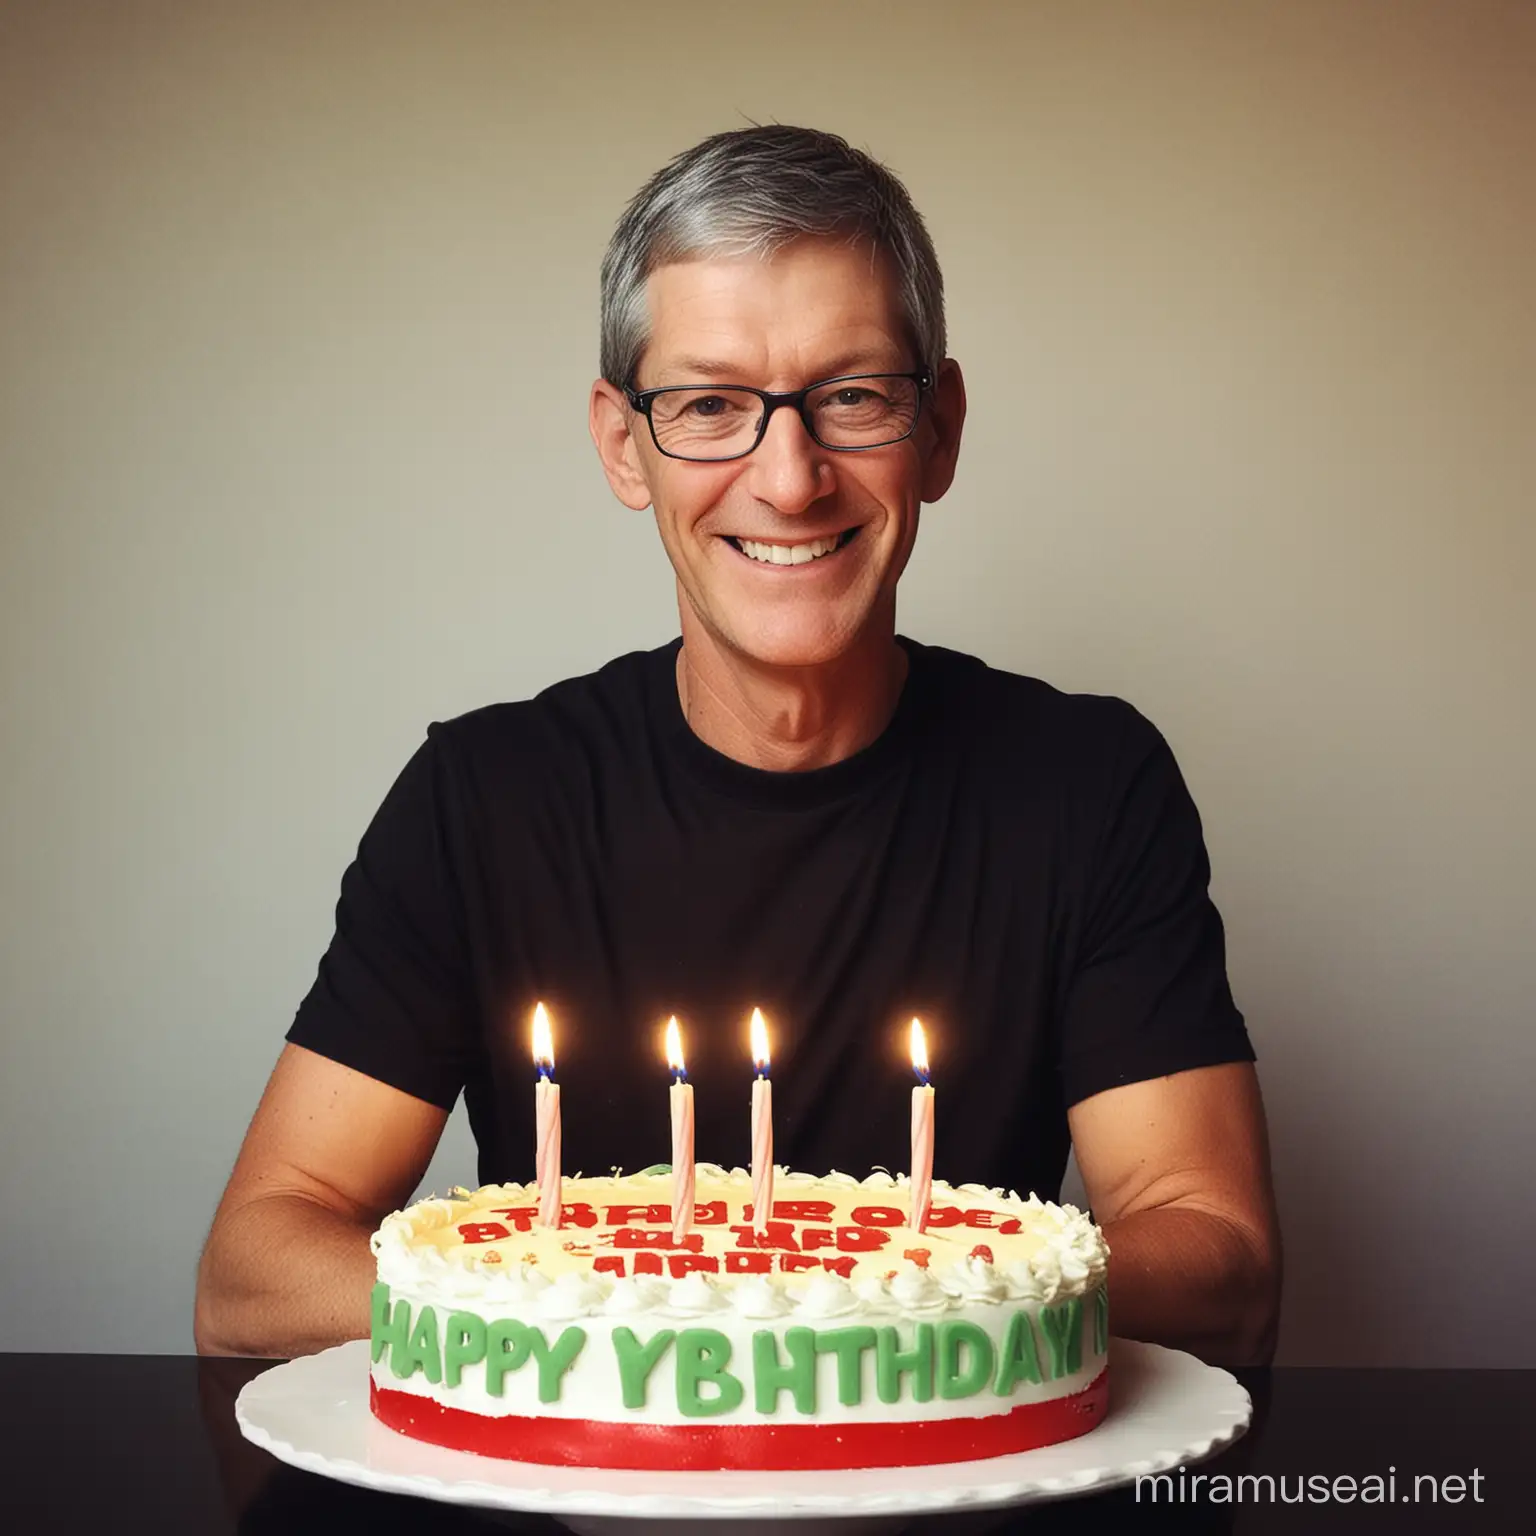 Tim Cook Wishing Jeff Bezos a Happy Birthday with a Tech Twist